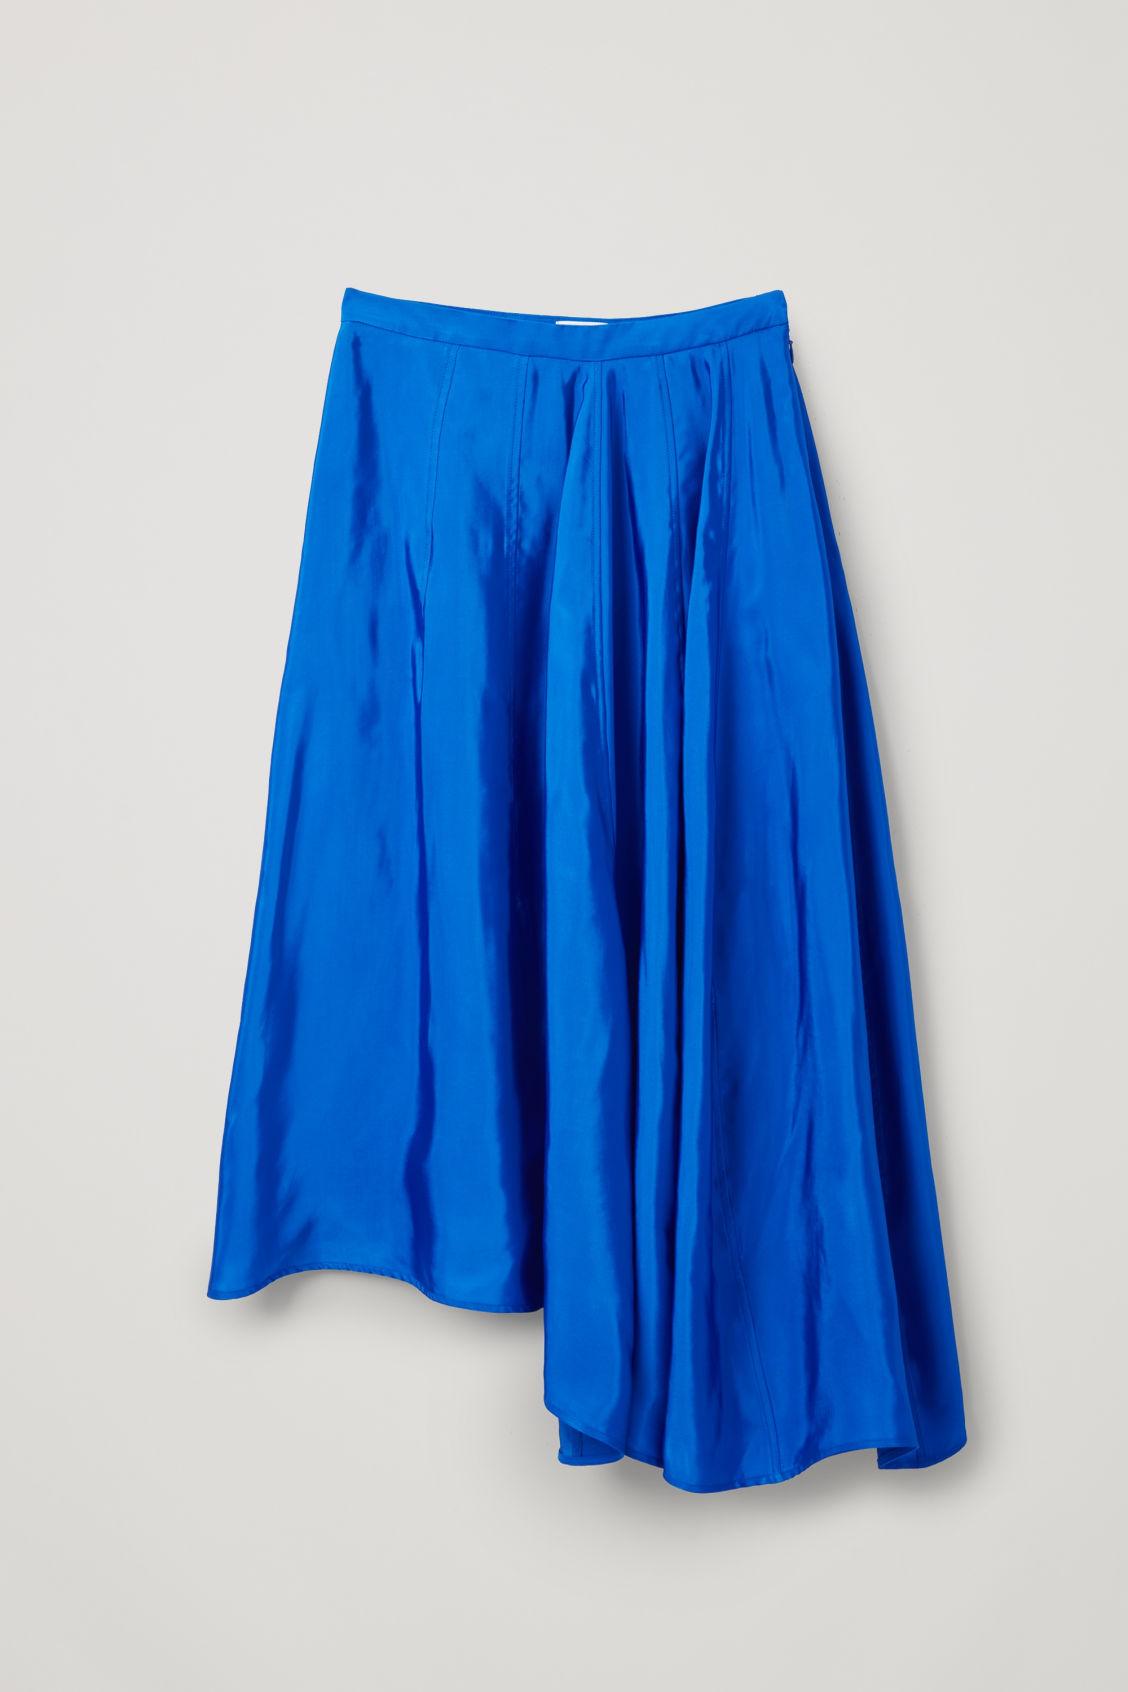 cos rock assymetrisch azul oscuro/asymmetric skirt Navy Cotton 42 UK 16 Hof115